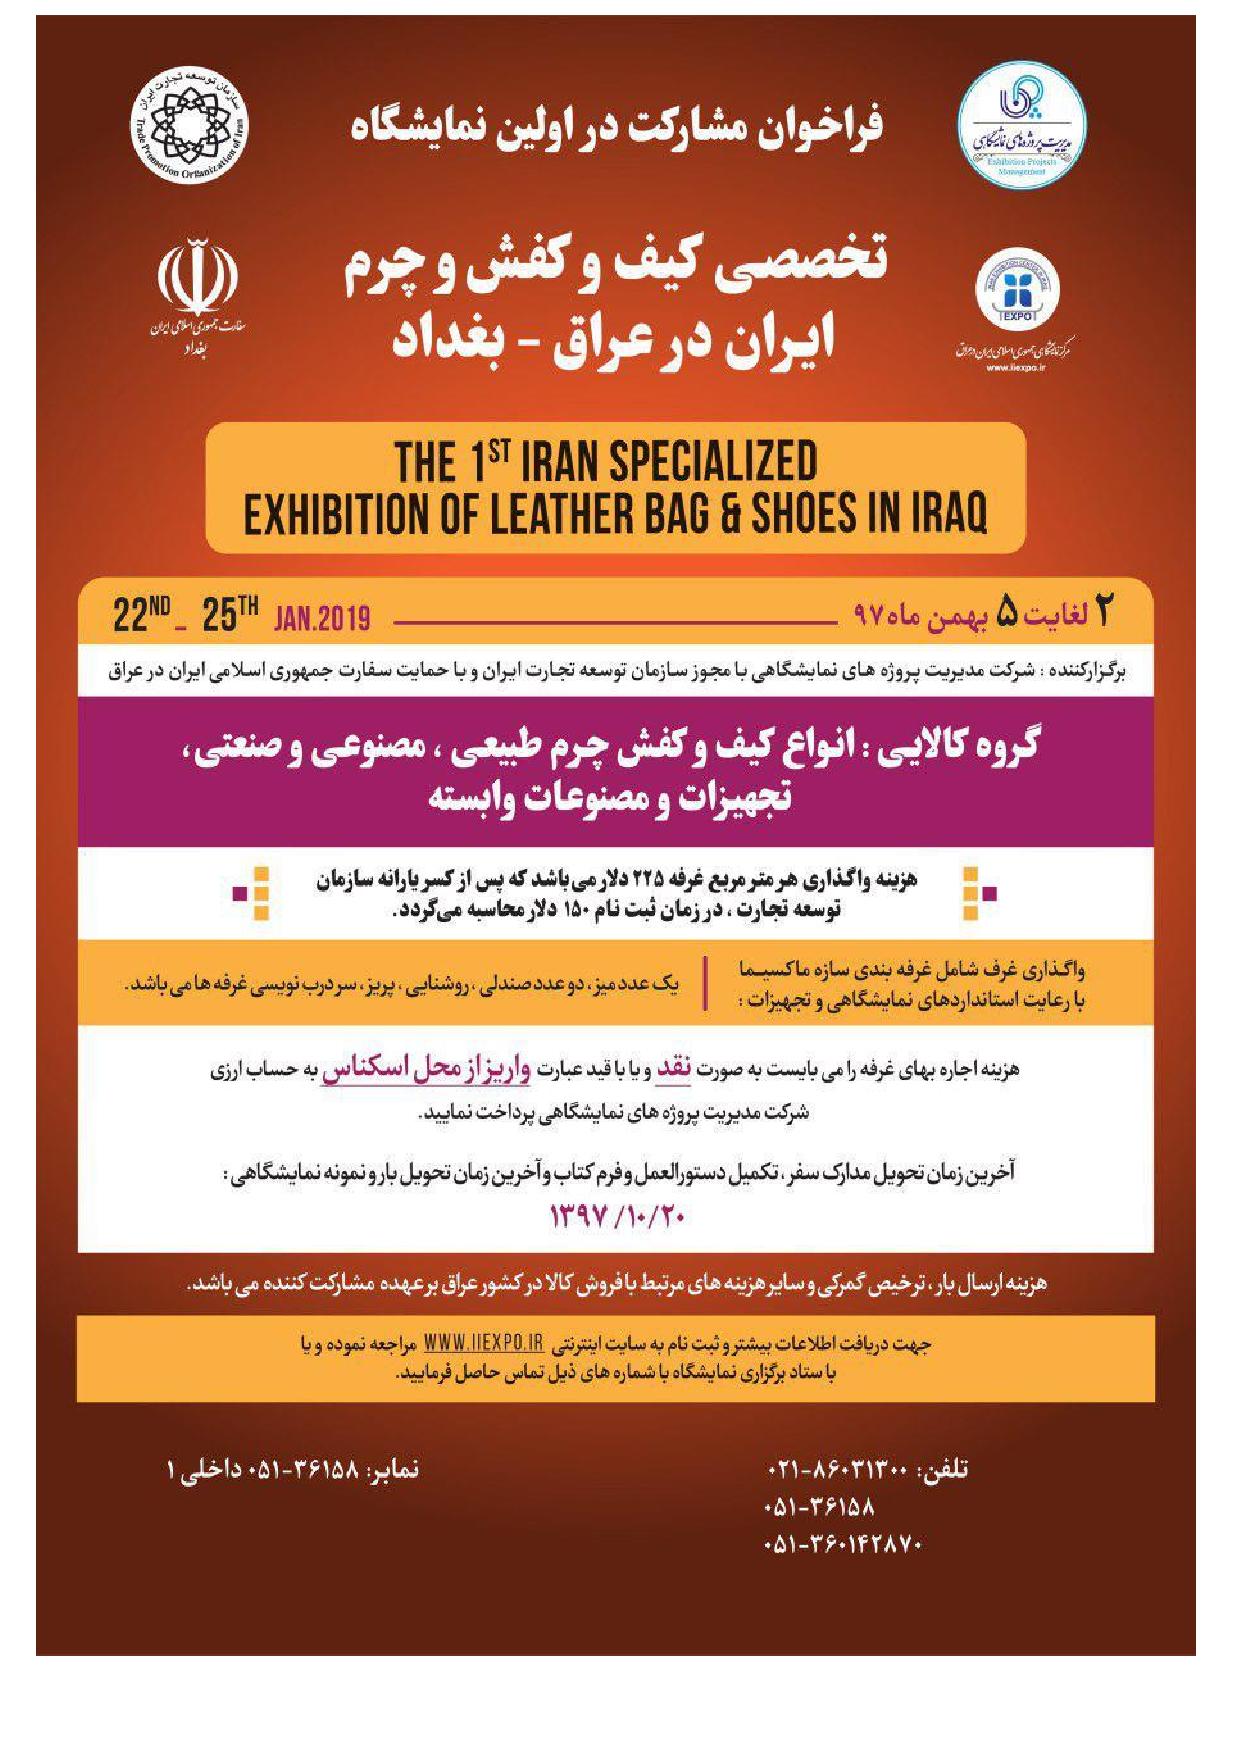 اولین نمایشگاه تخصصی کیف و کفش و چرم ایران و عراق